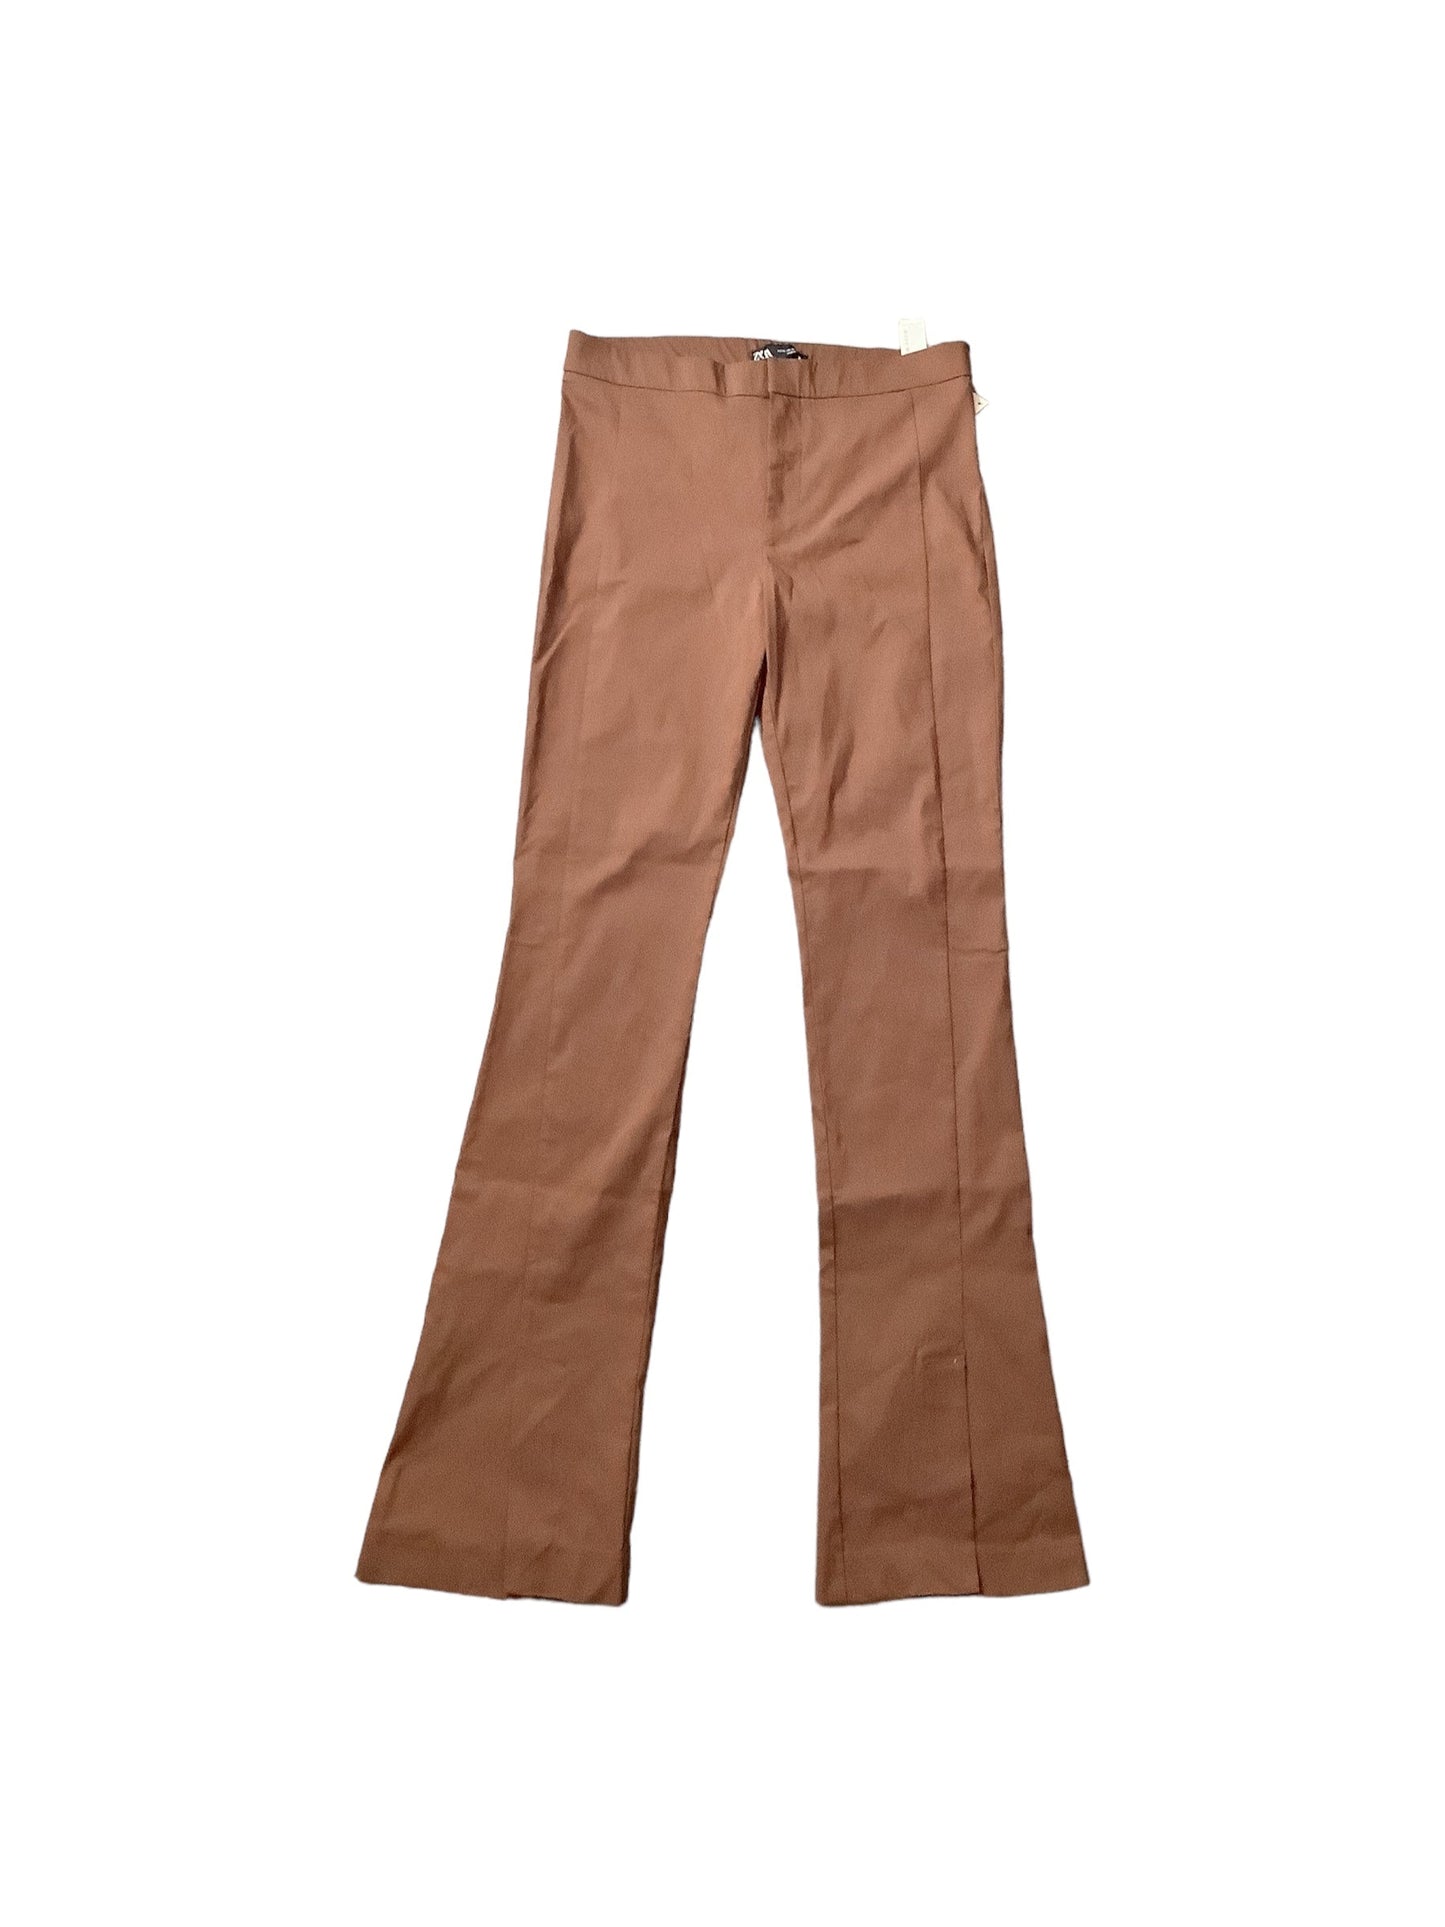 Brown Pants Dress Zara, Size Xl